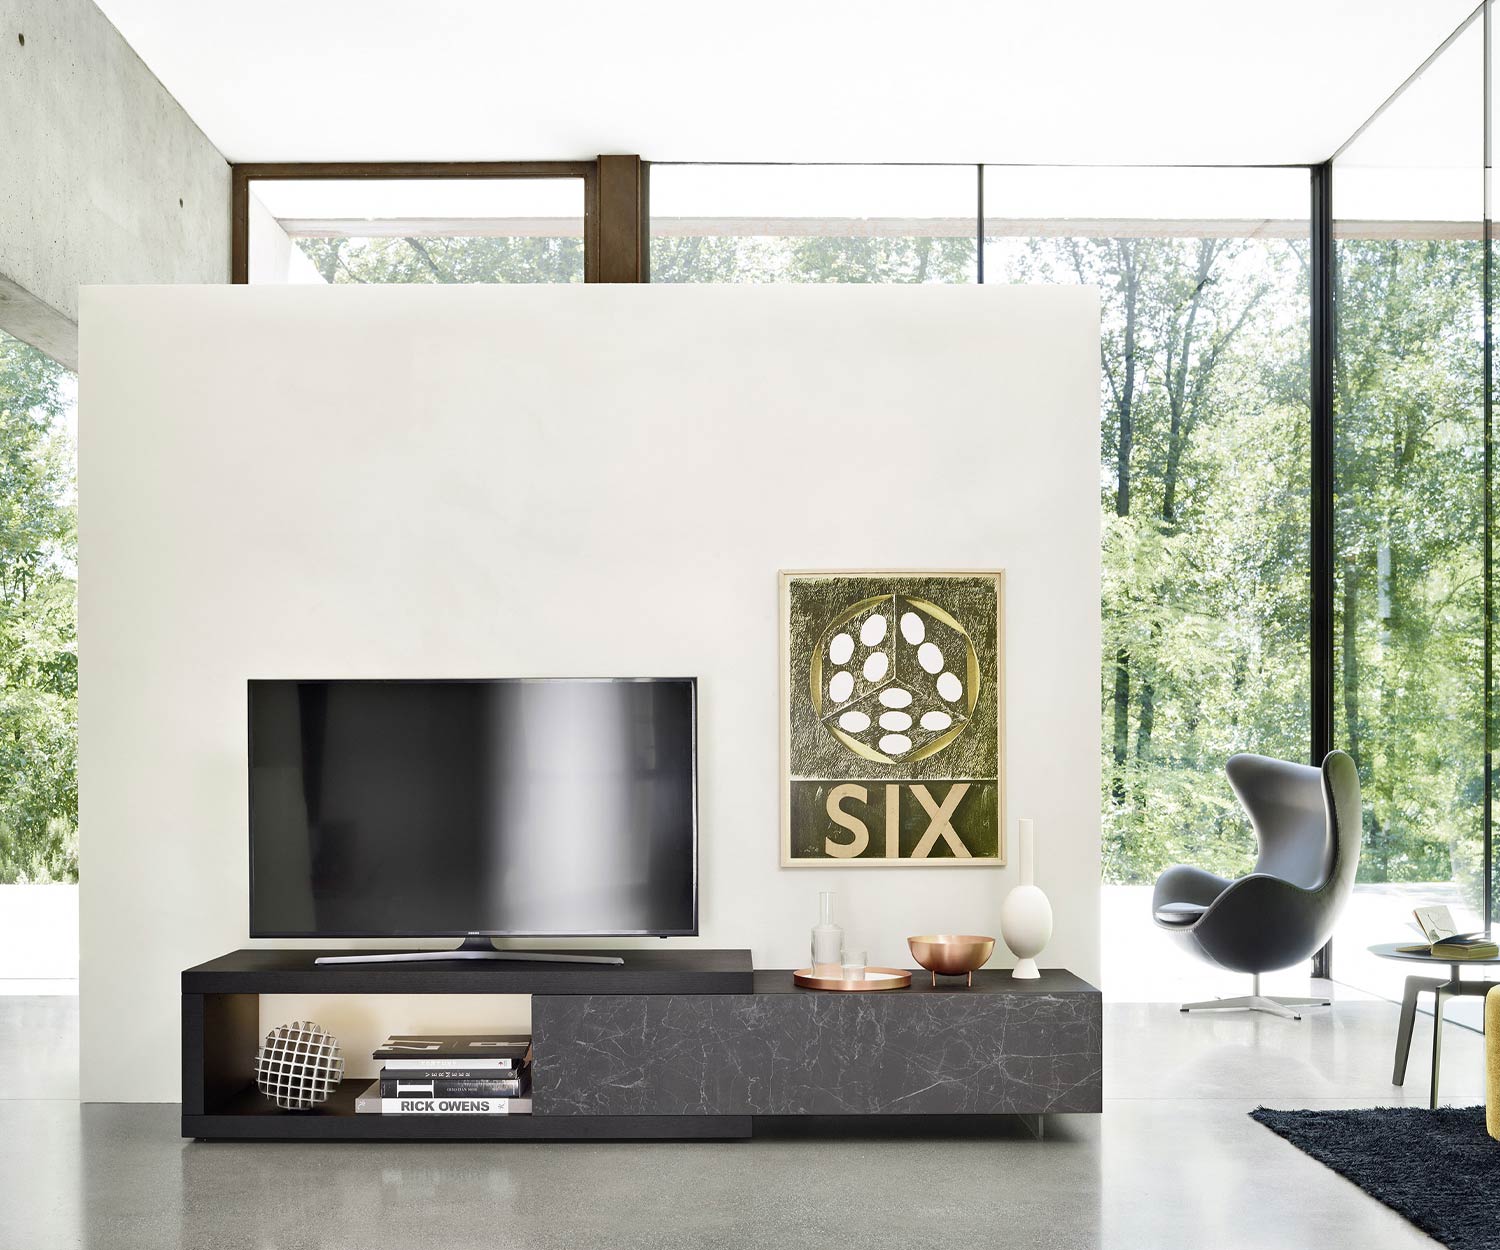 Dekorative Mini Wohnwand mit Bodenbank für LCD TV sowie Deko Objekte und Unterschrank mit griffloser Keramikfront Marmor Dunkel